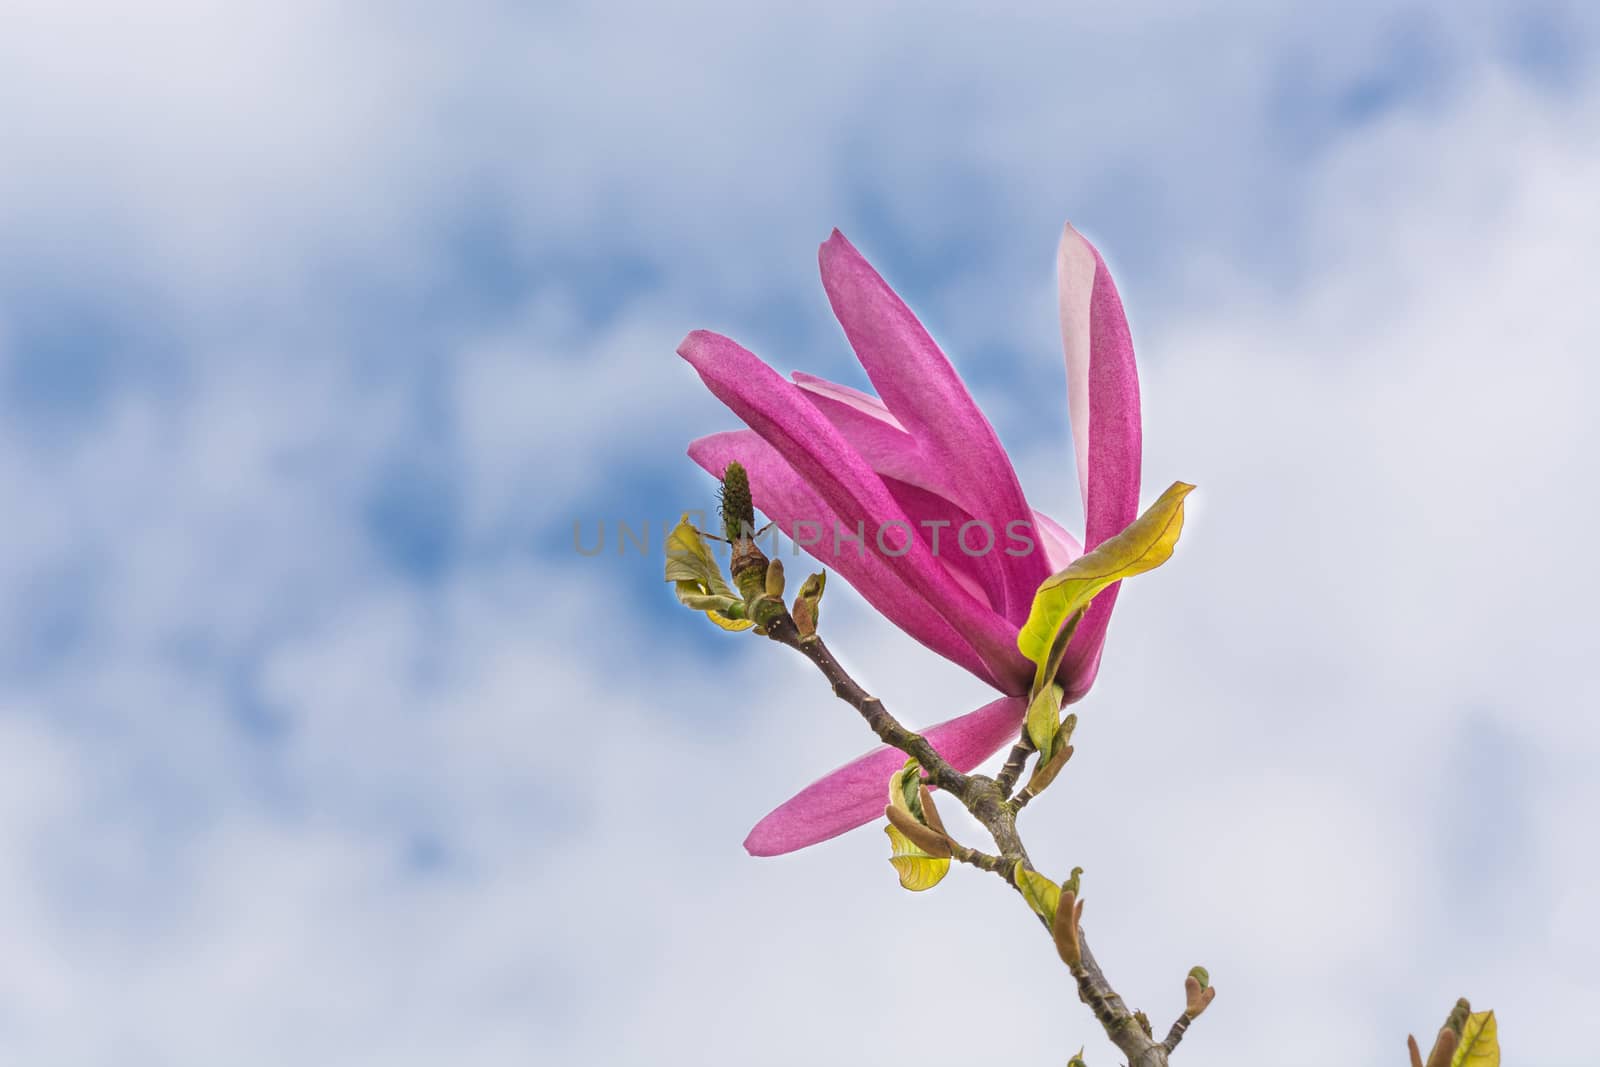 Spring magnolia flower against a blue sky.